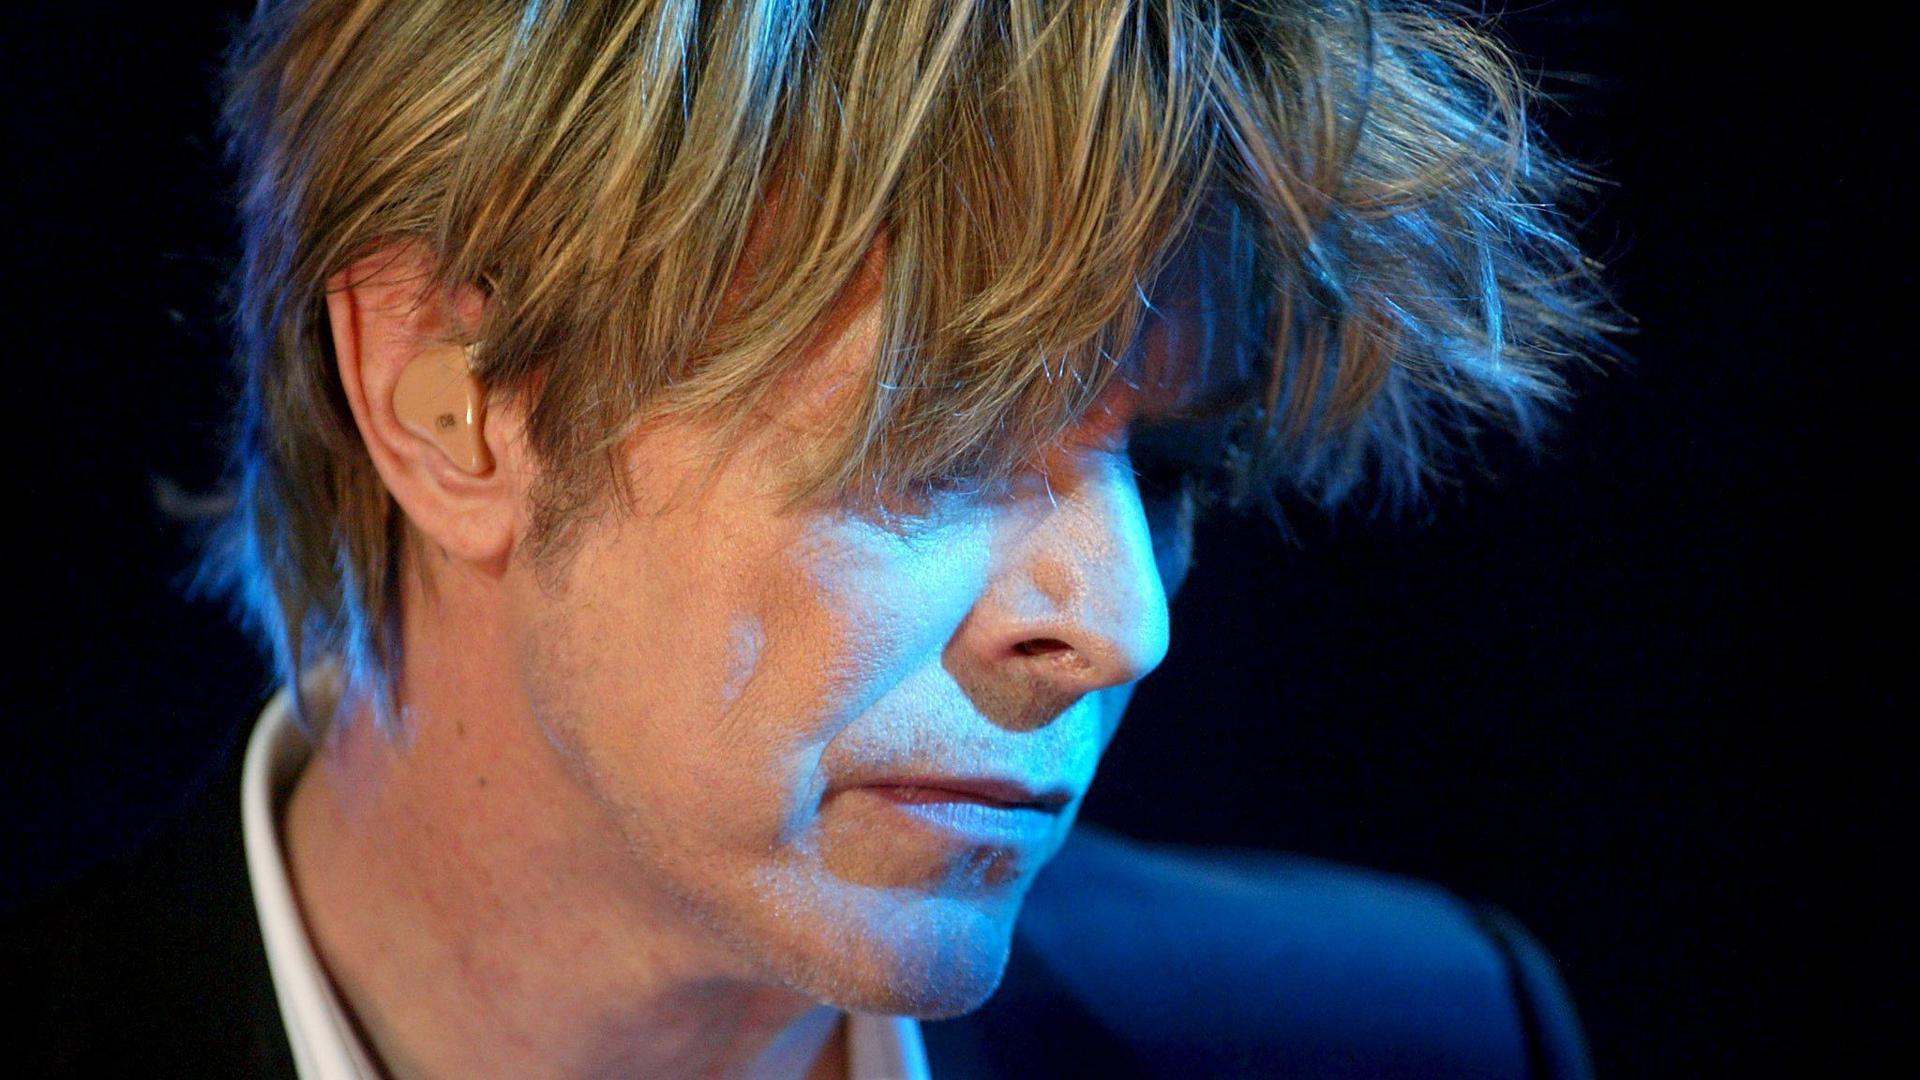 David Bowie beim Montreux Jazz Festival 2002.